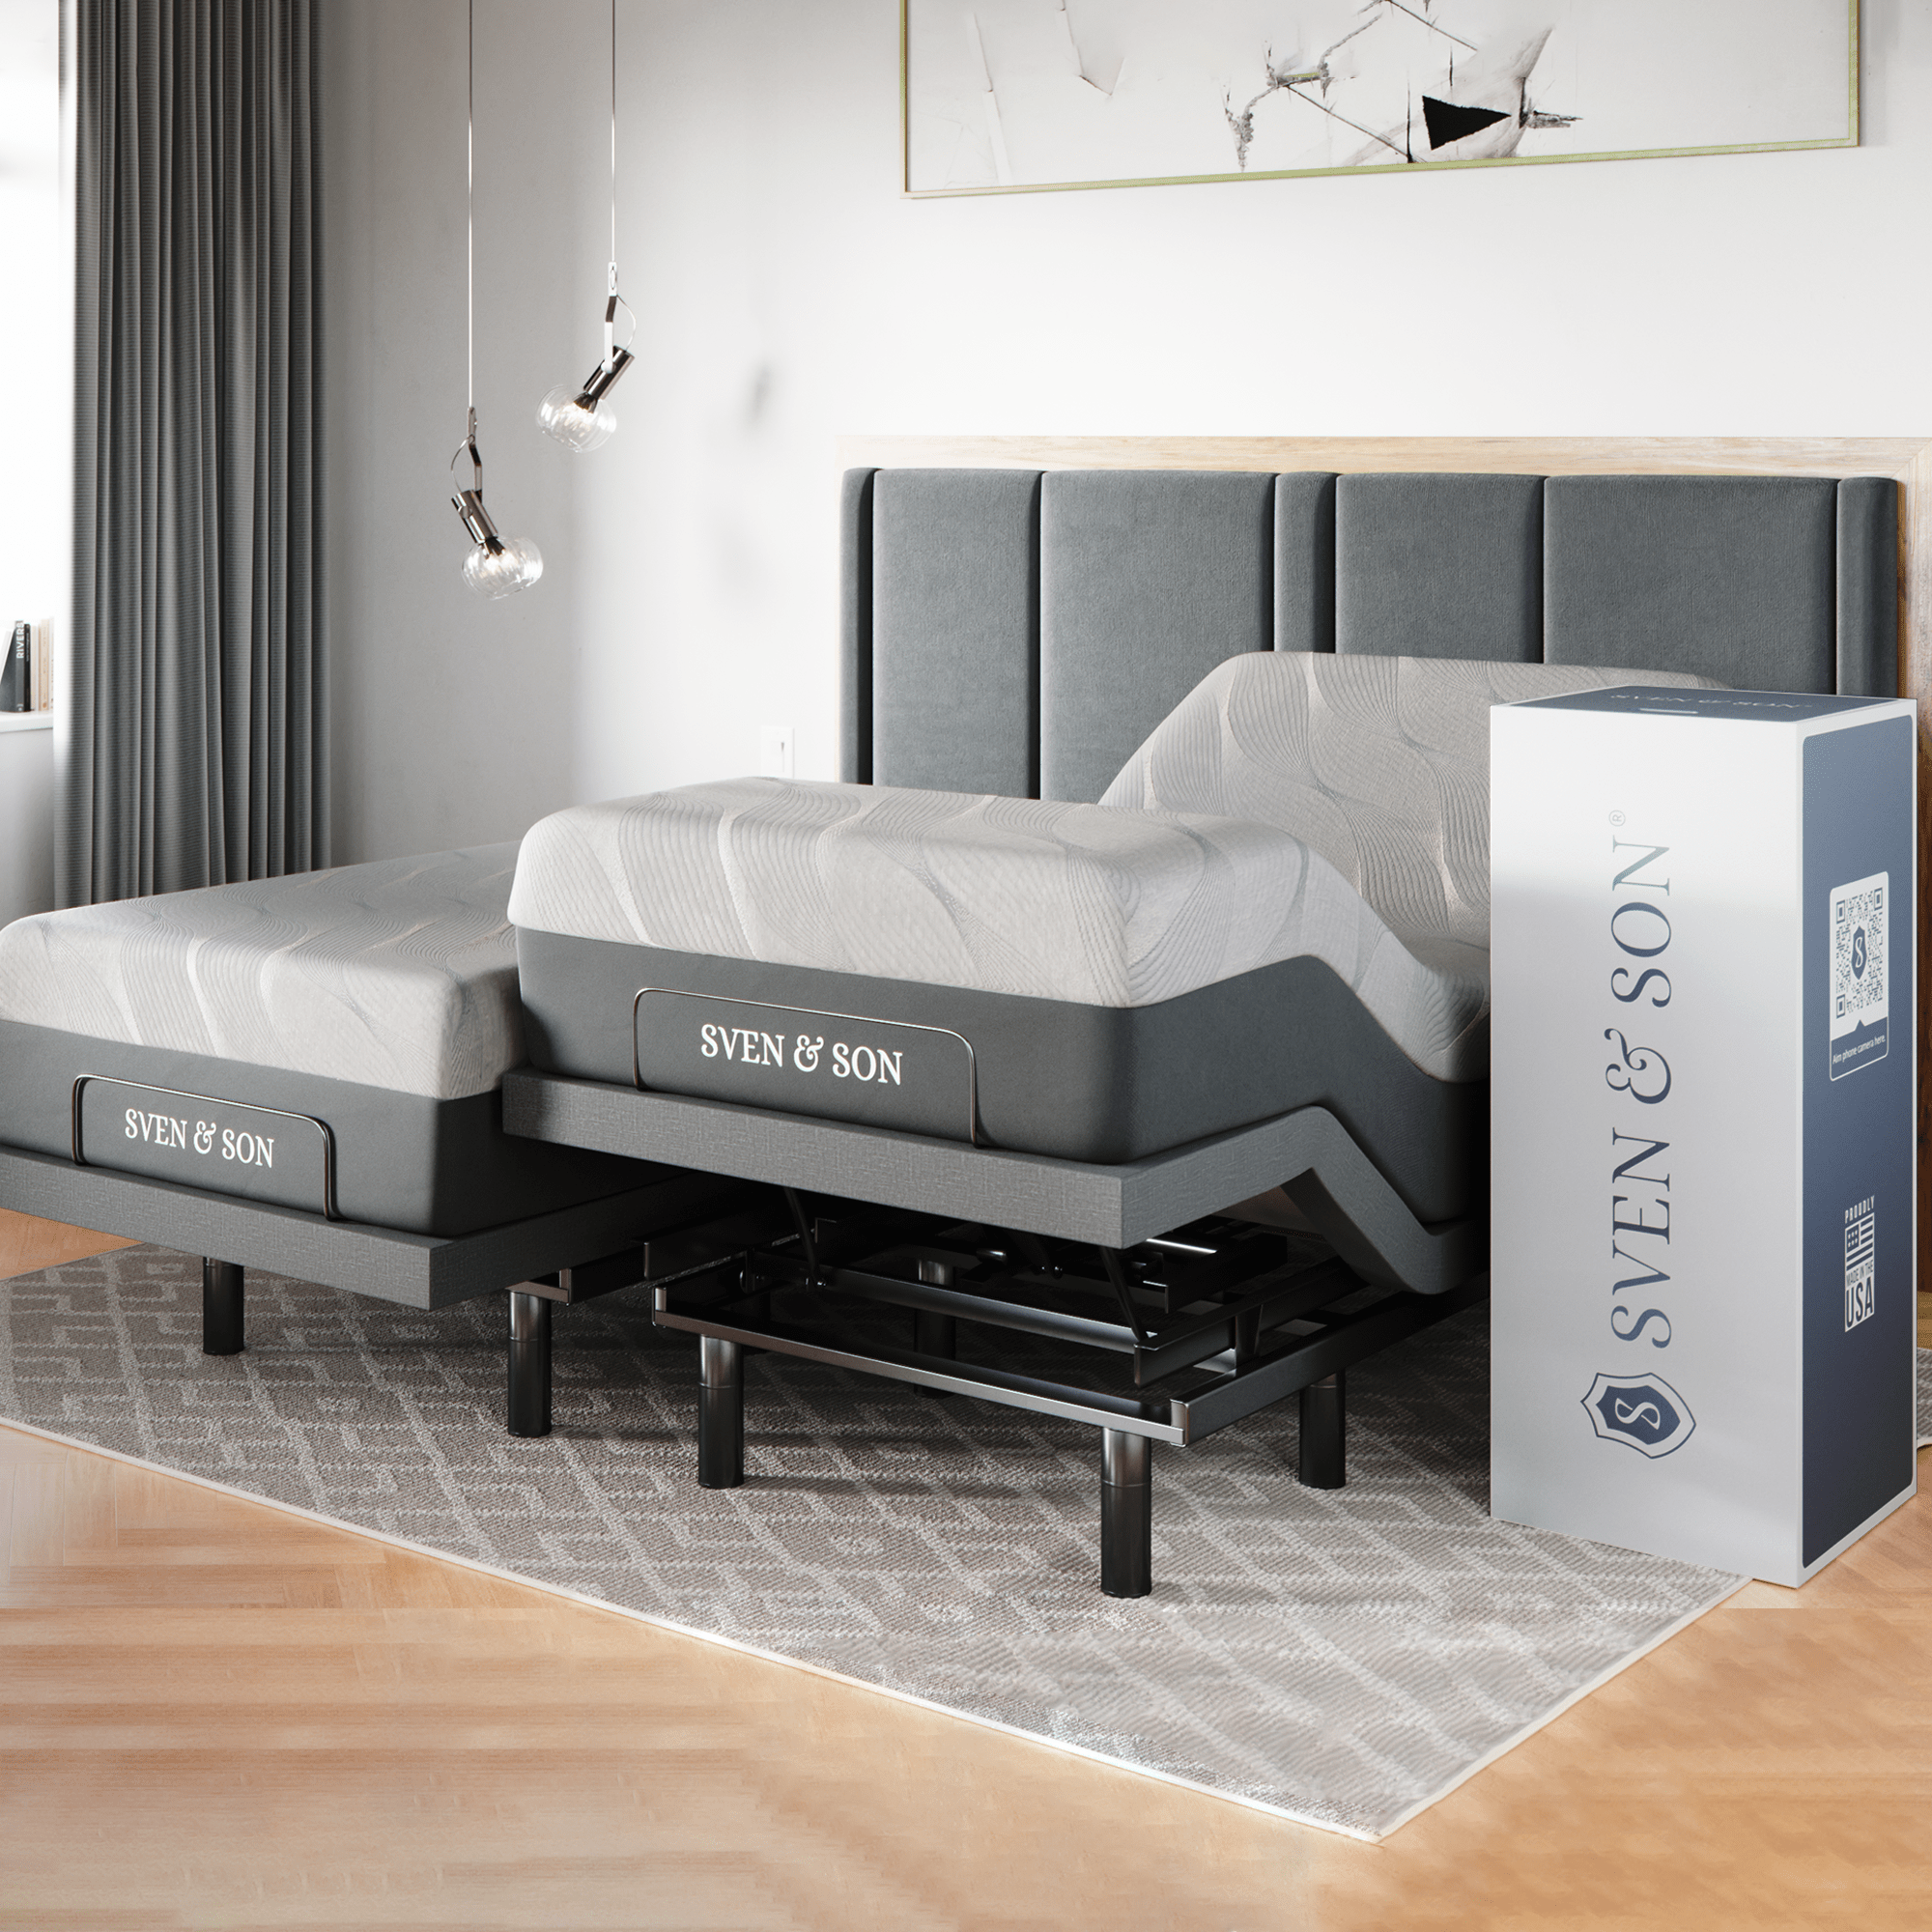 Base de cama ajustable serie clásica + elección del paquete de colchones